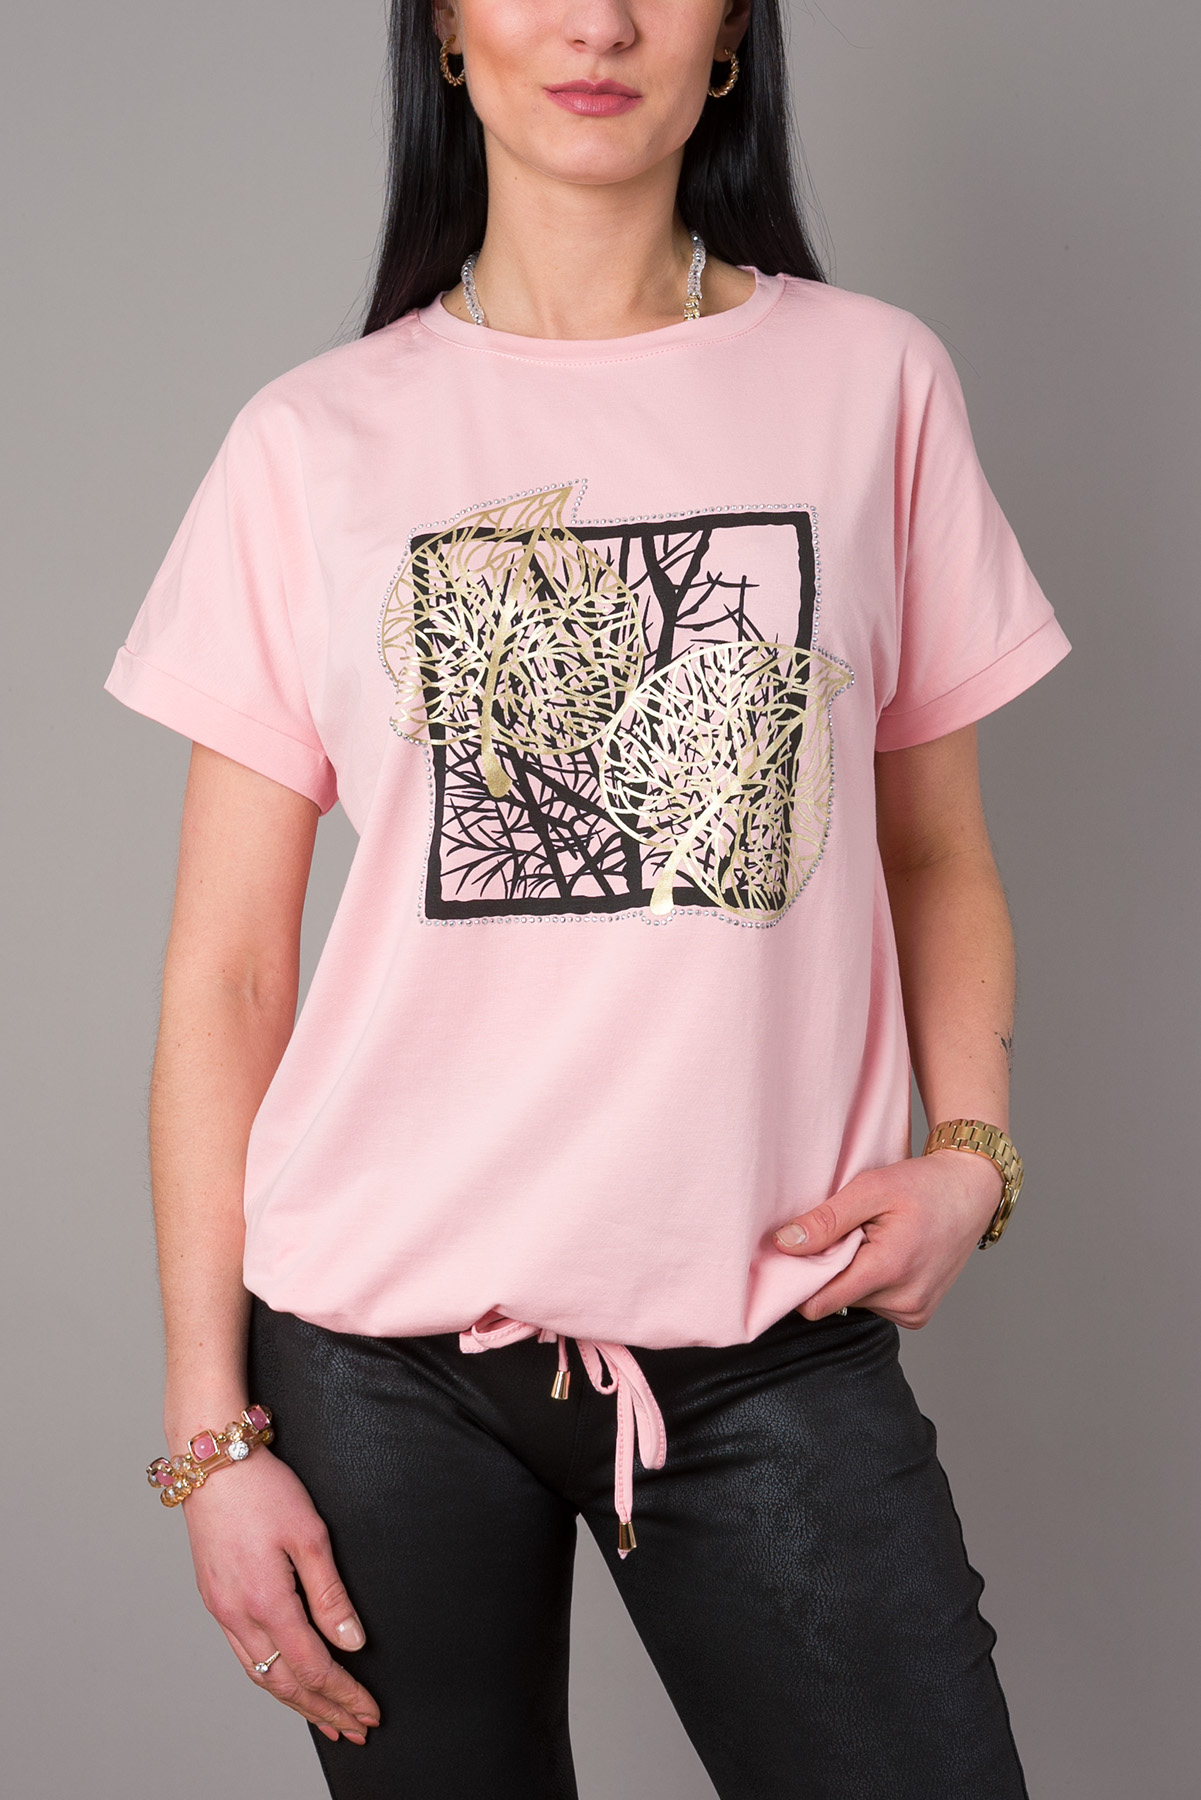 Dámske tričko Strom s aplikáciami - ružové